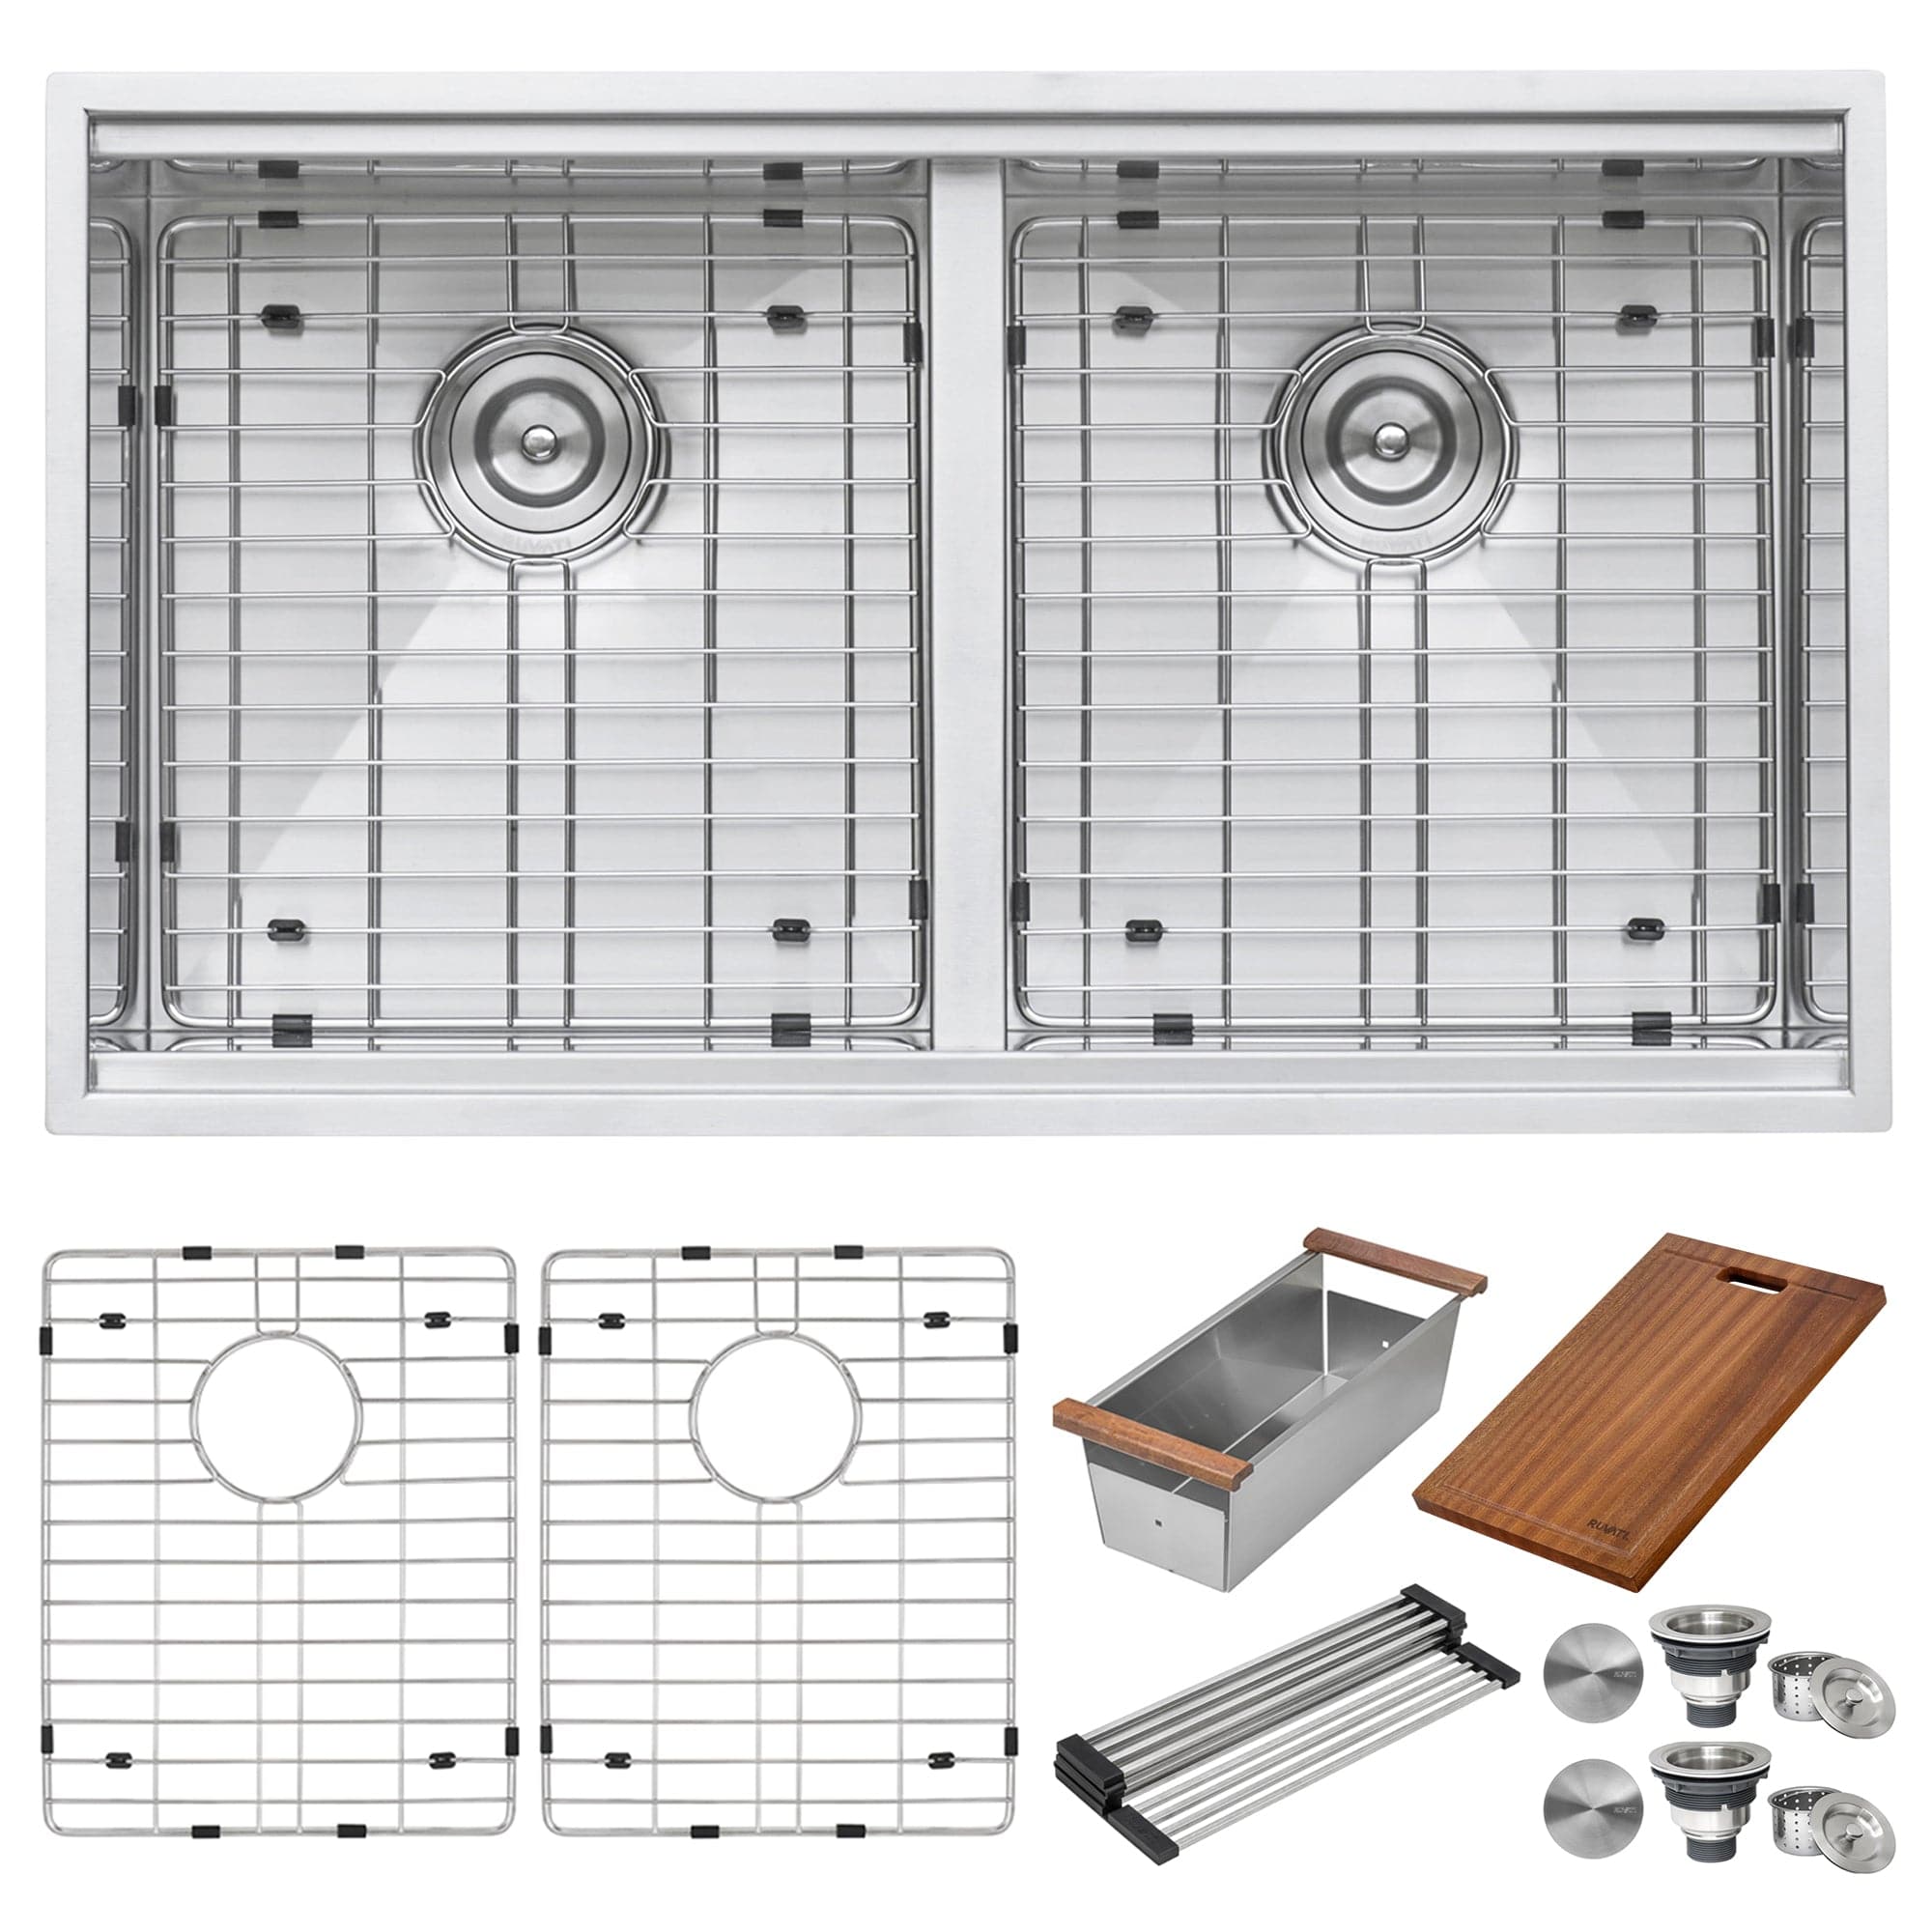 Ruvati Roma 30" Workstation Ledge Stainless Steel Kitchen Sink RVH8345